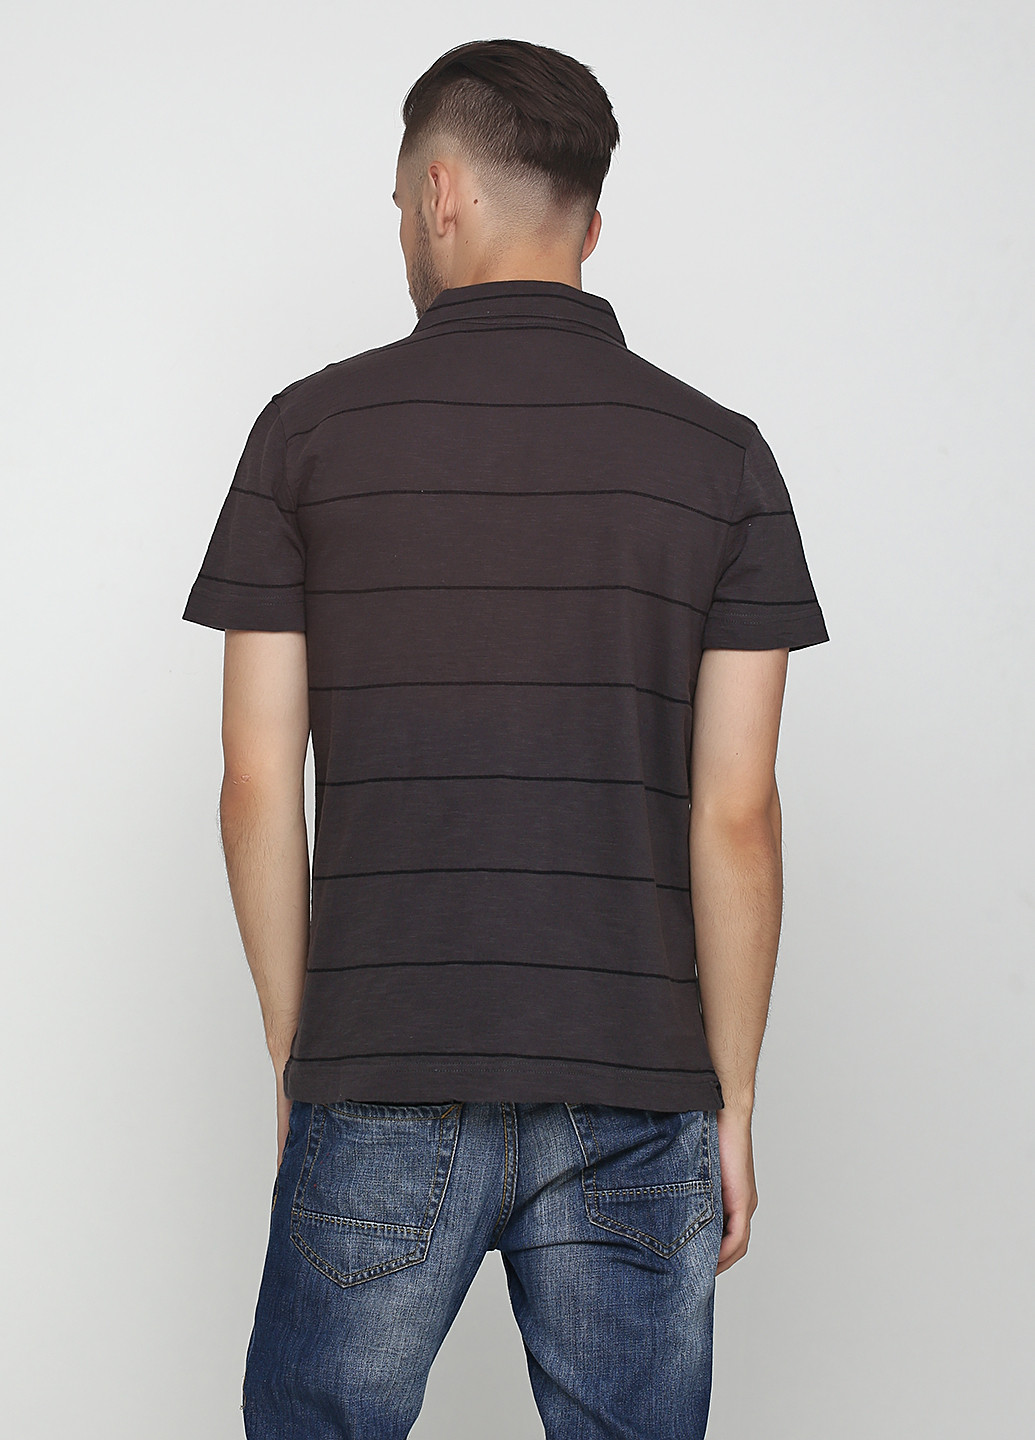 Грифельно-серая футболка-поло для мужчин Calvin Klein Jeans в полоску